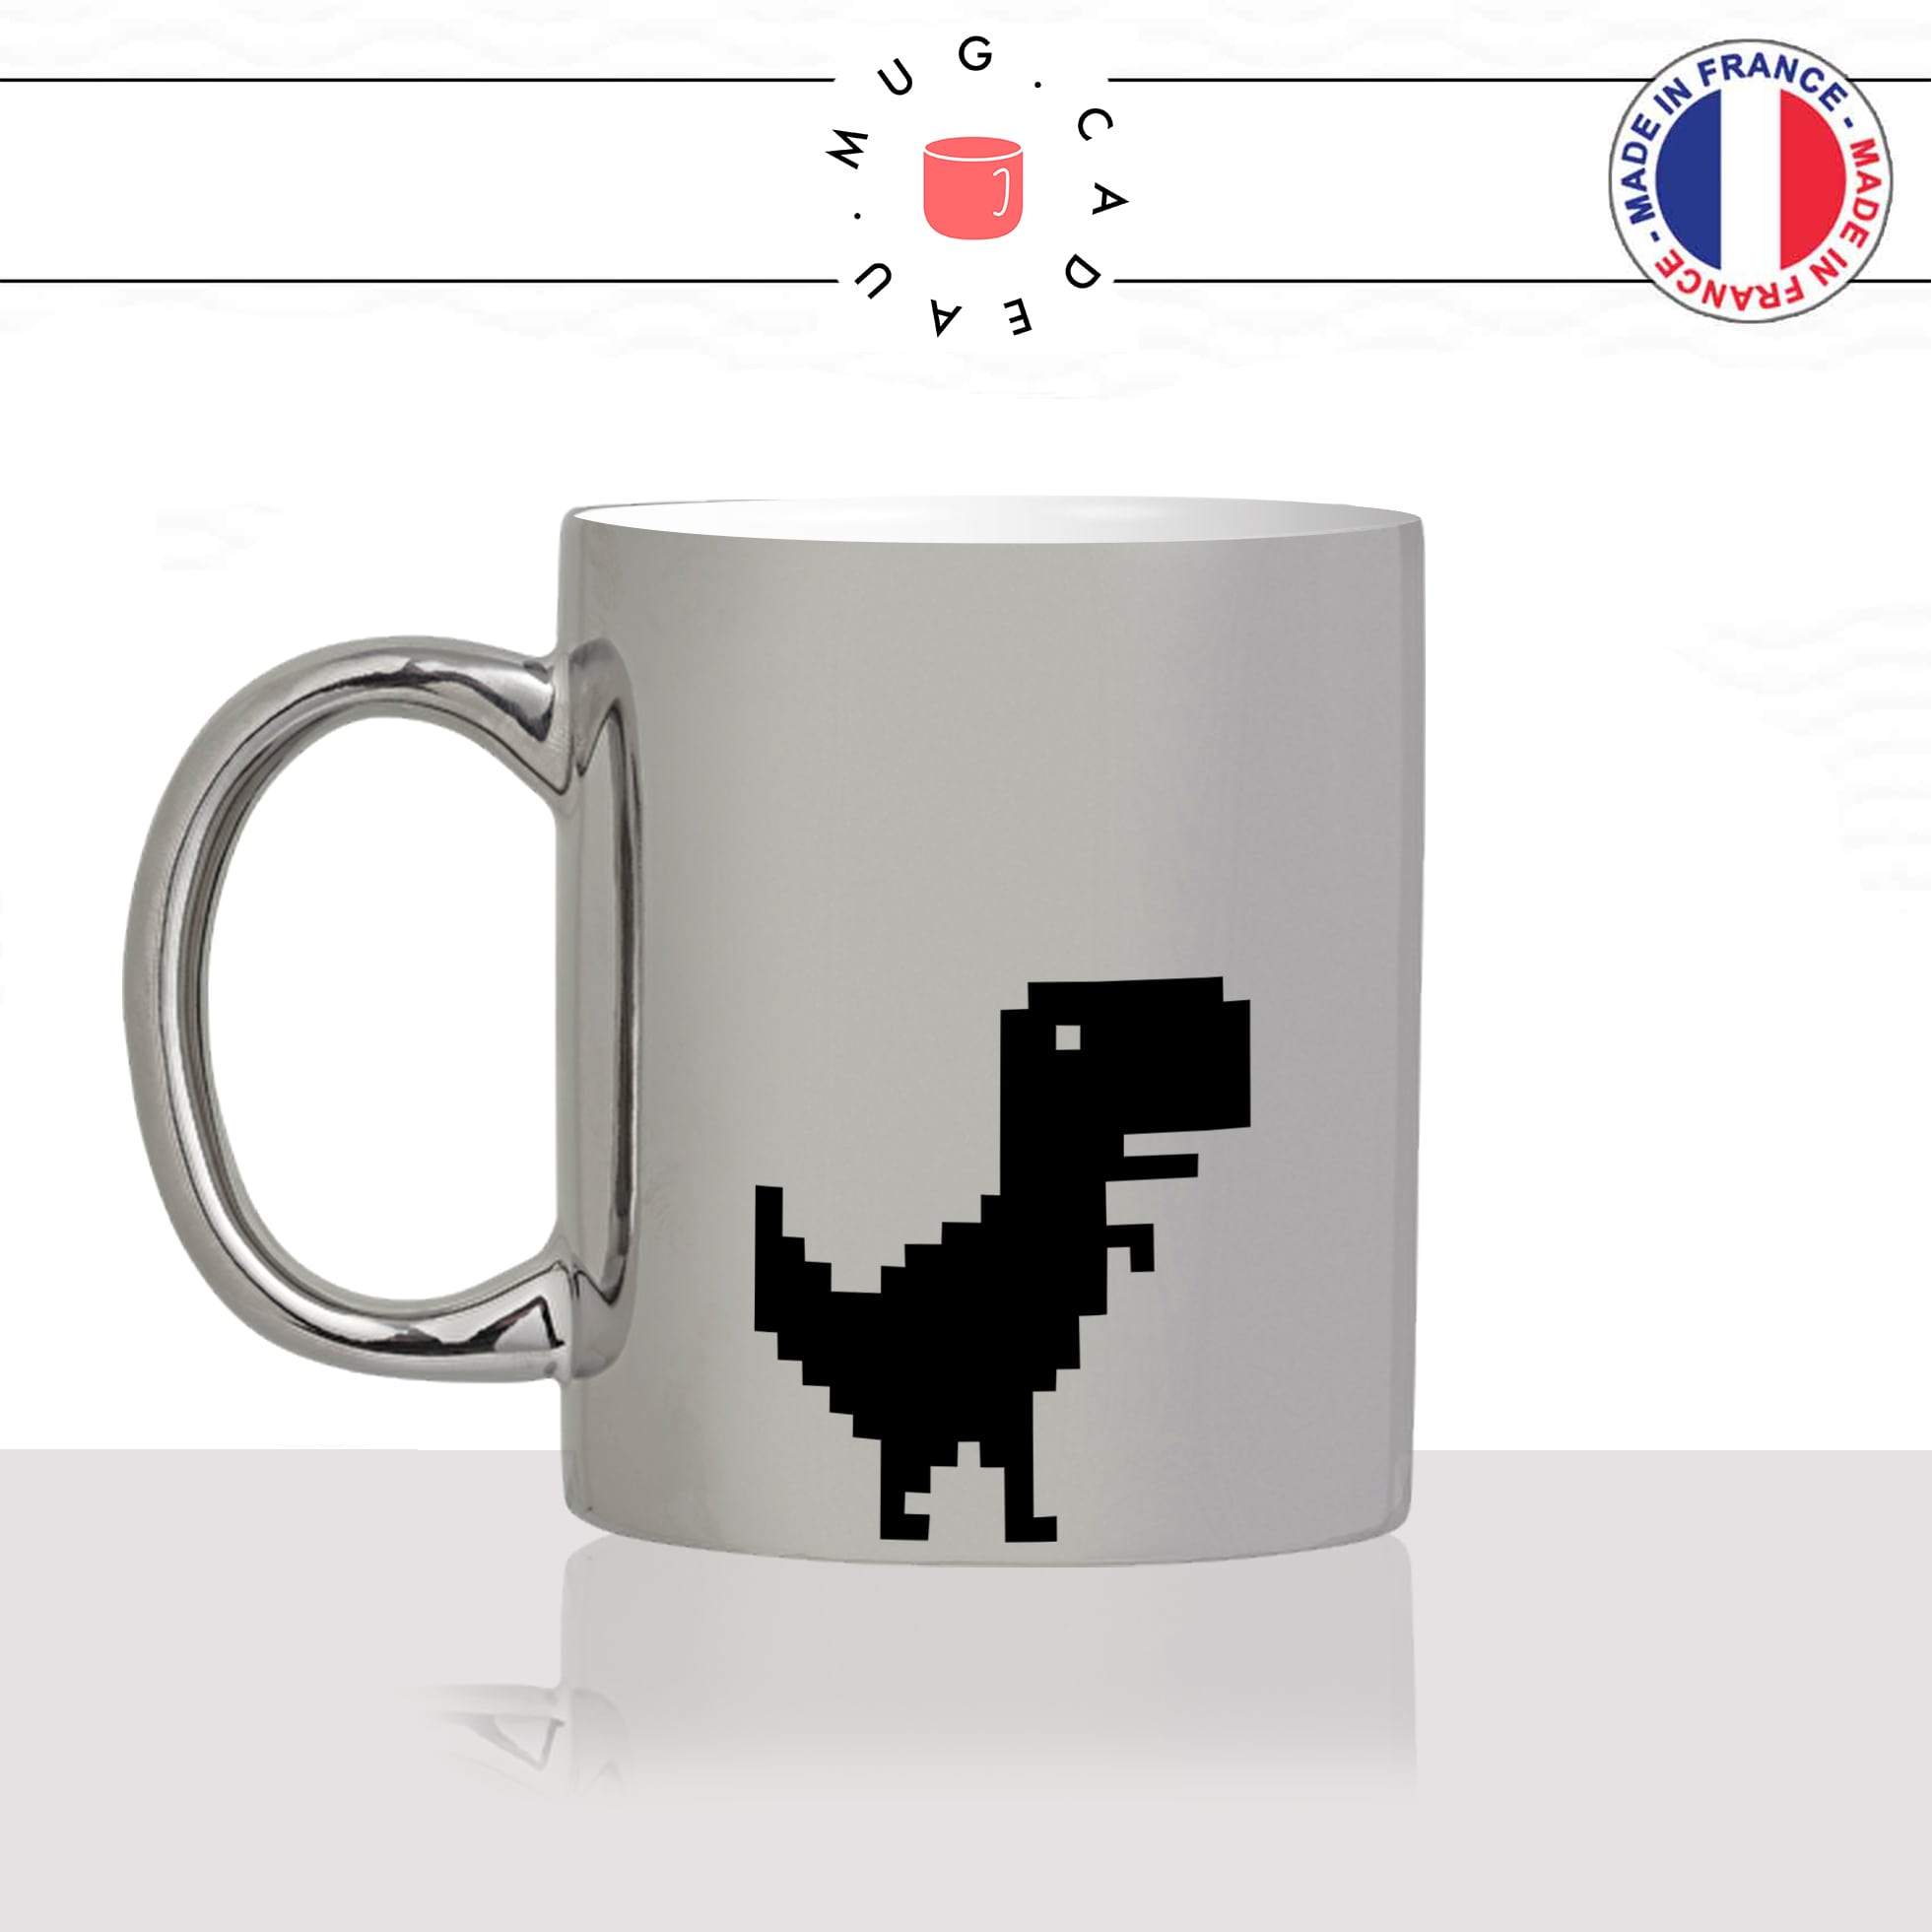 mug-tasse-argenté-silver-dinosaure-t-rex-geek-no-internet-error-drole-mignon-animal-noir-fun-café-thé-idée-cadeau-original-personnalisé-min